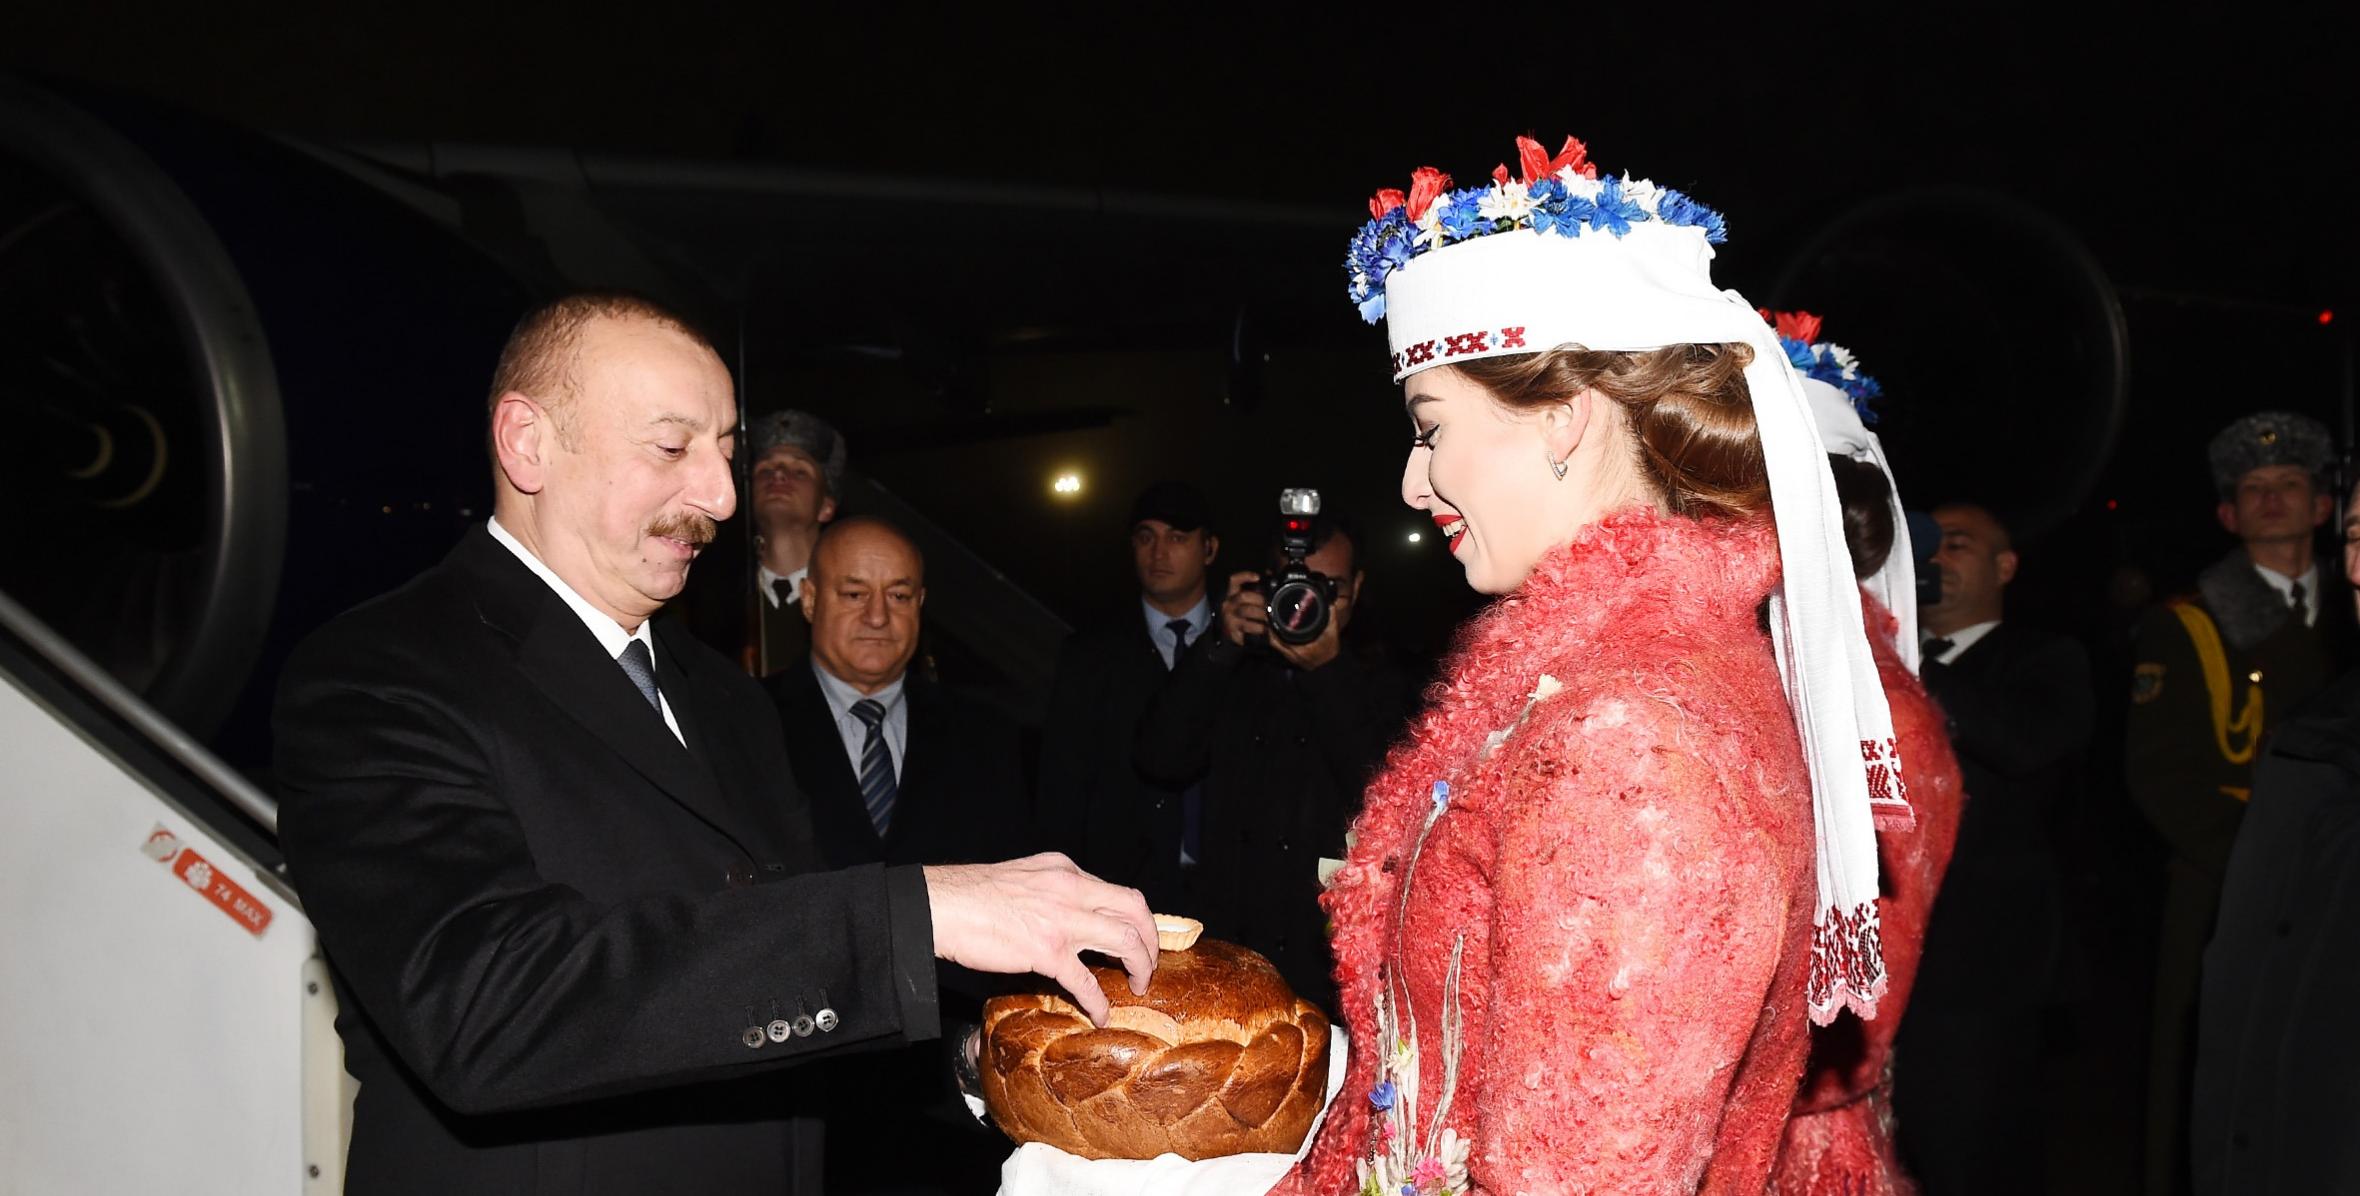 Ilham Aliyev arrived in Belarus for official visit